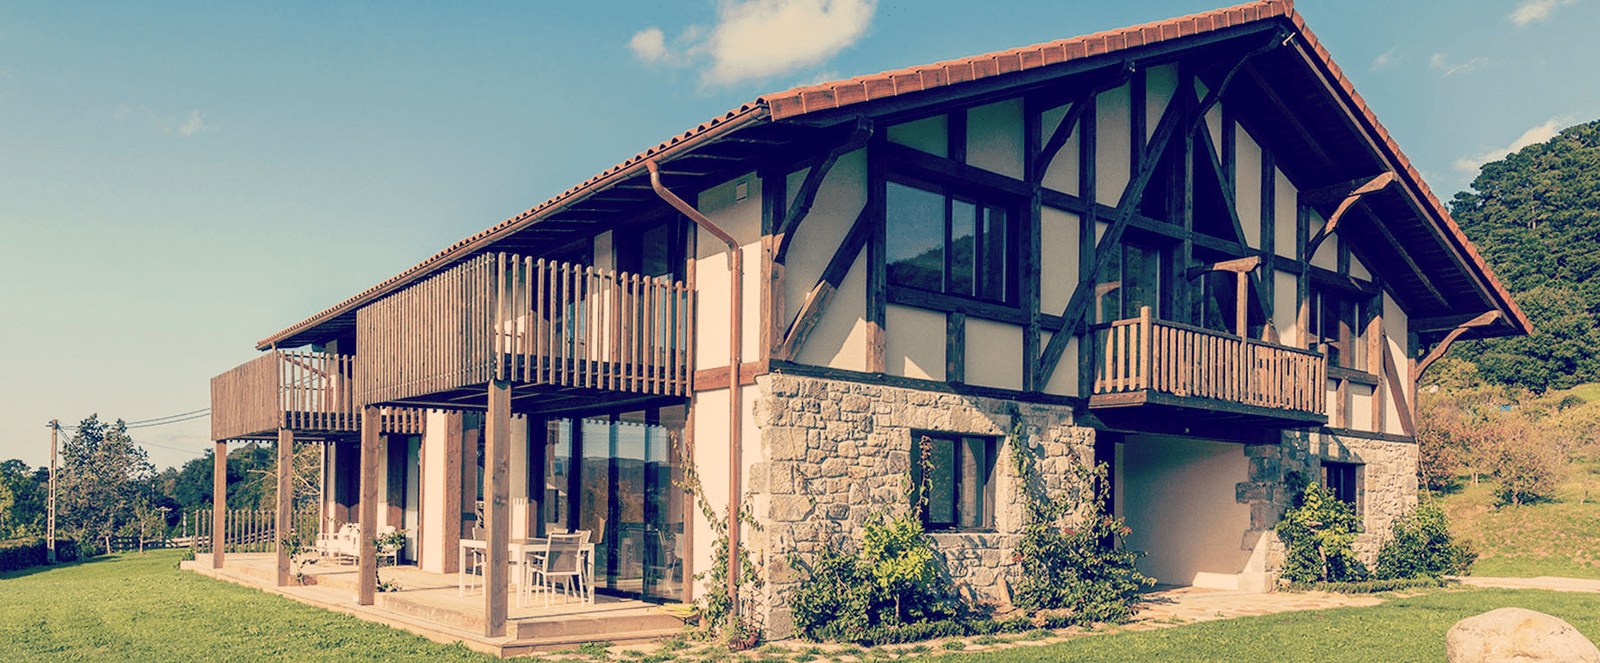 Kanala Hemingway House- Xarma, alojamientos con encanto en el País Vasco